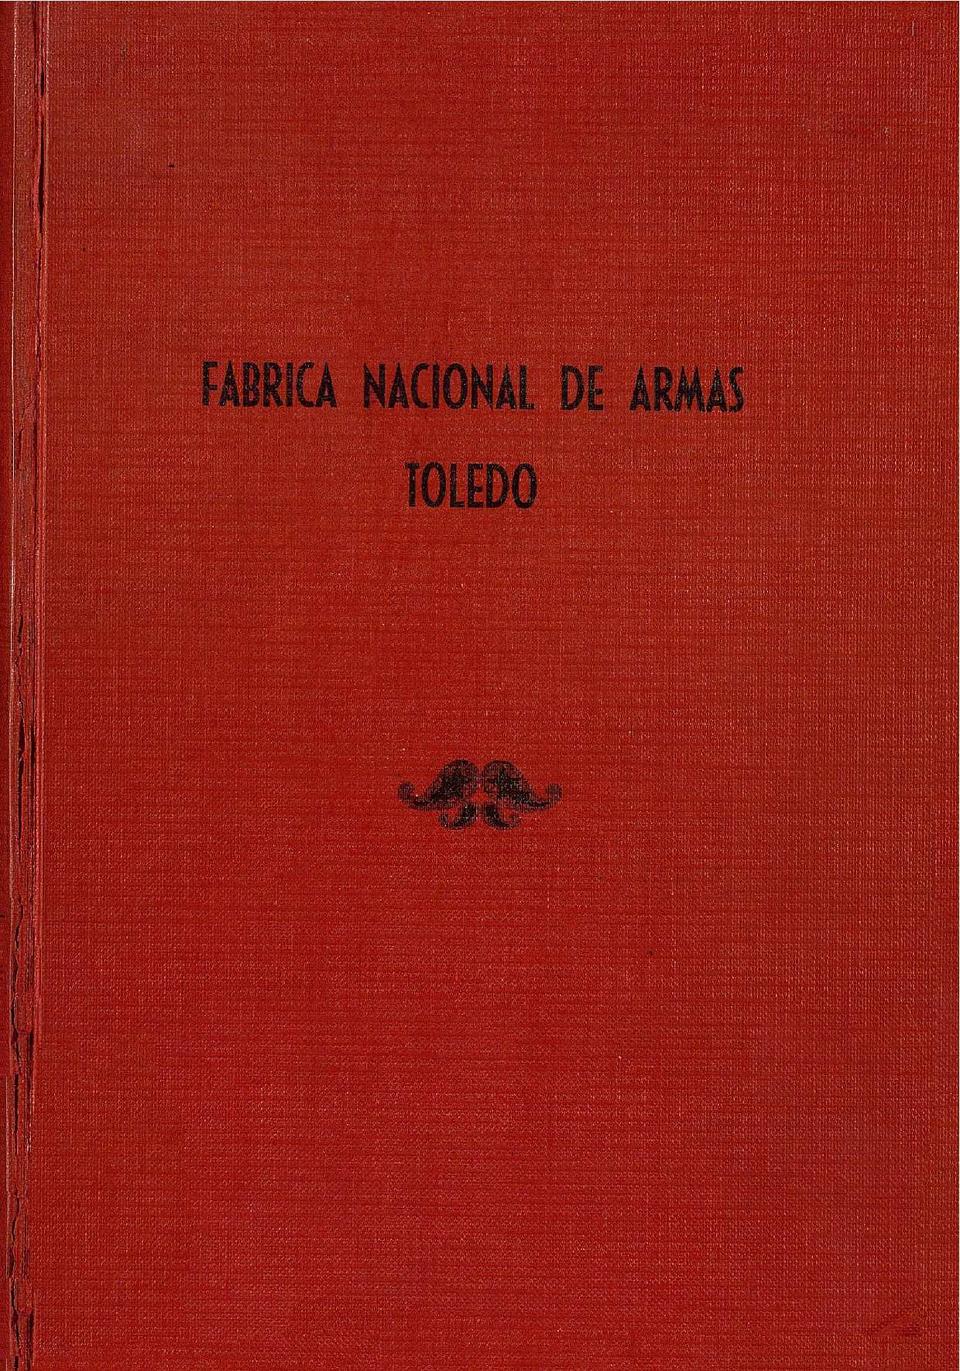 BICENTENARIO de la Fábrica Nacional de Armas de Toledo 1780-1980.-. [Monografía]